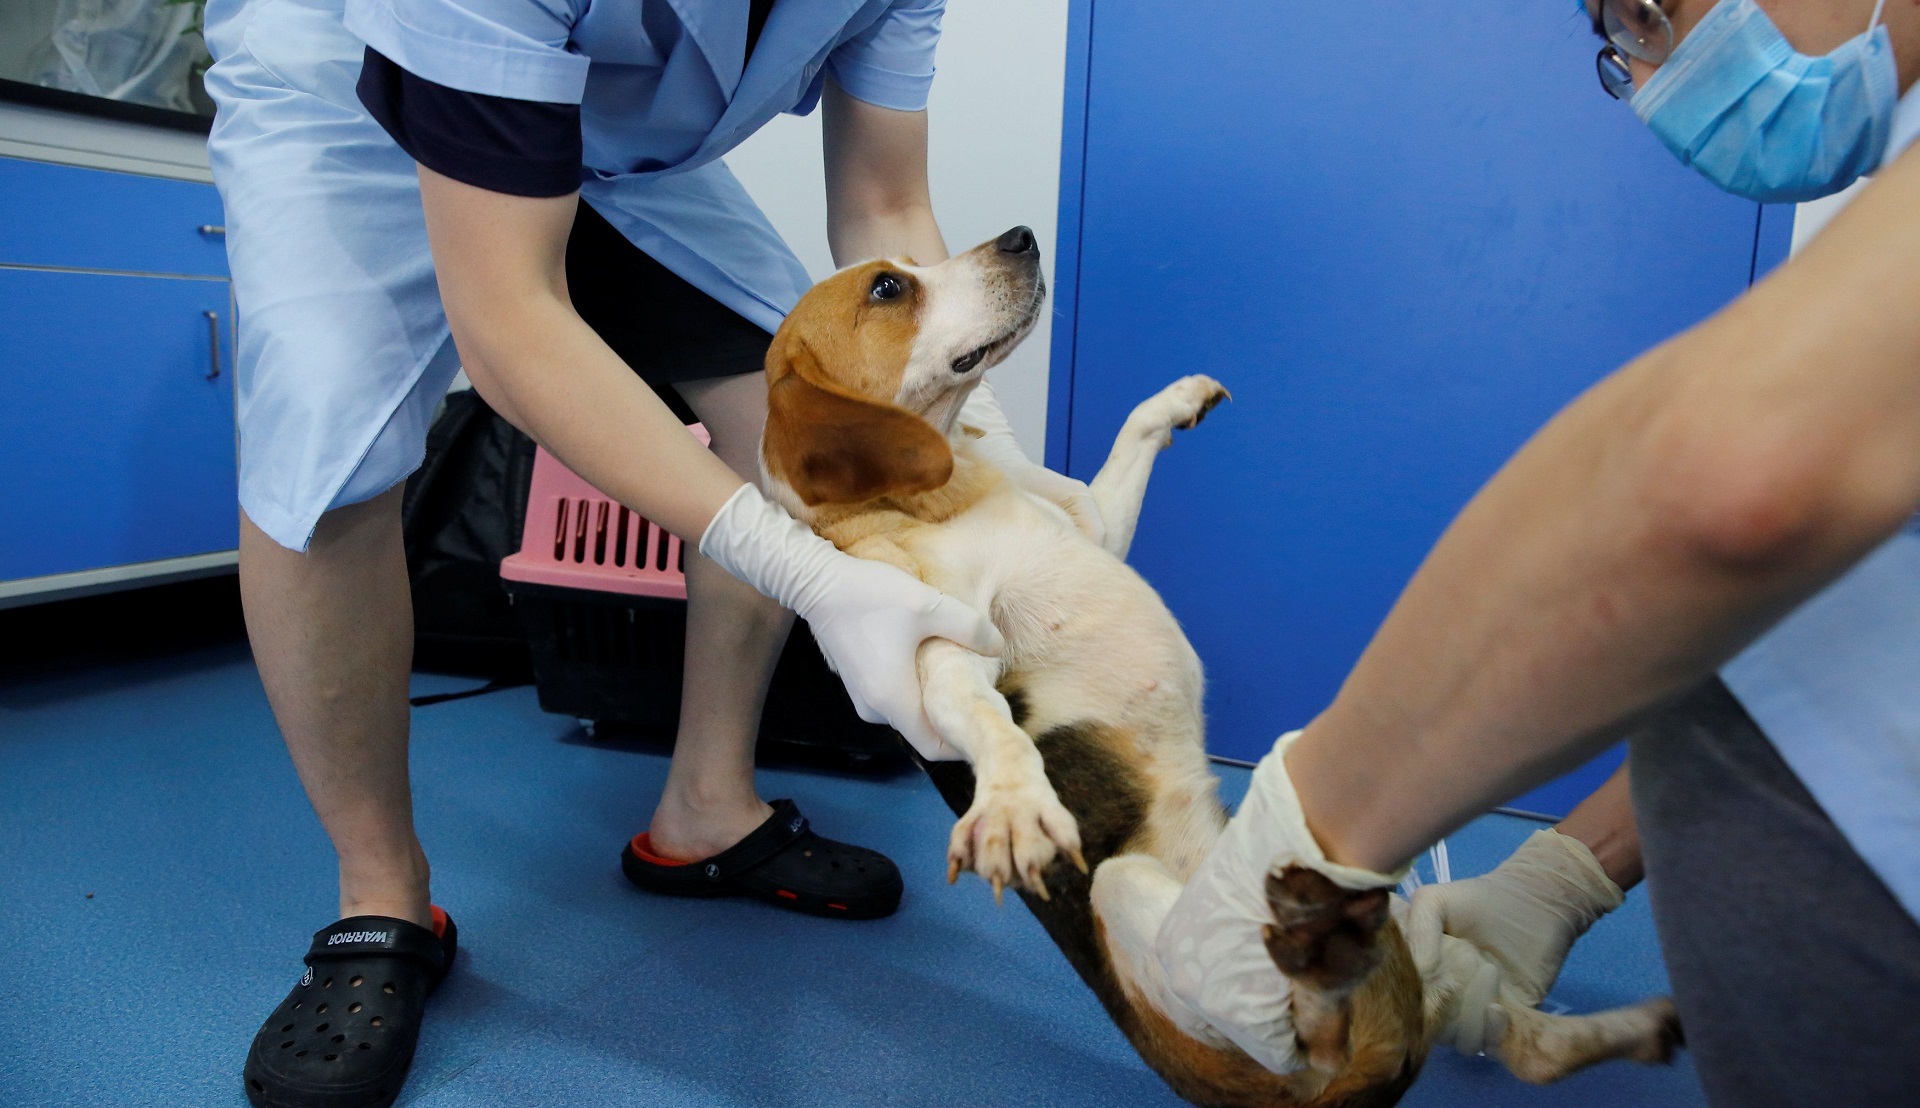 Los perros pueden contraer el virus, según un estudio científico (REUTERS/Thomas Peter)